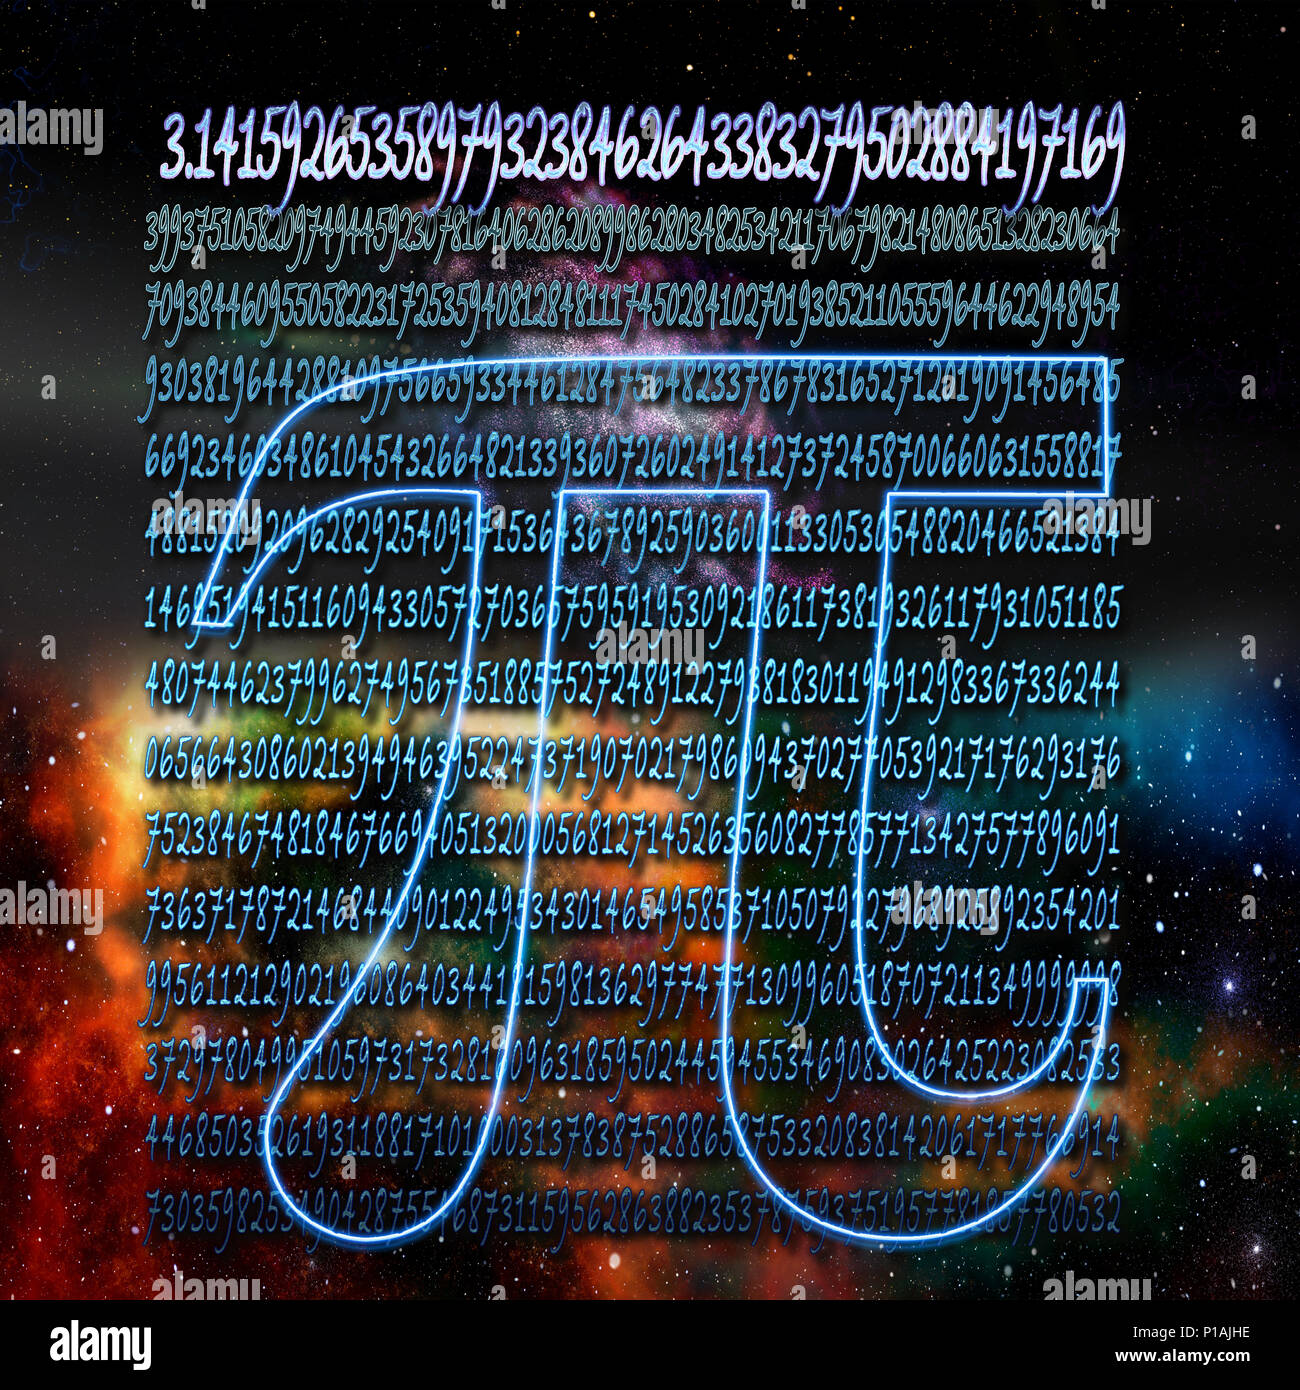 Amélioration de l'image numérique de la lettre grecque pi signe mathématique dans l'espace avec les mille premiers chiffres du numéro dans l'arrière-plan Banque D'Images